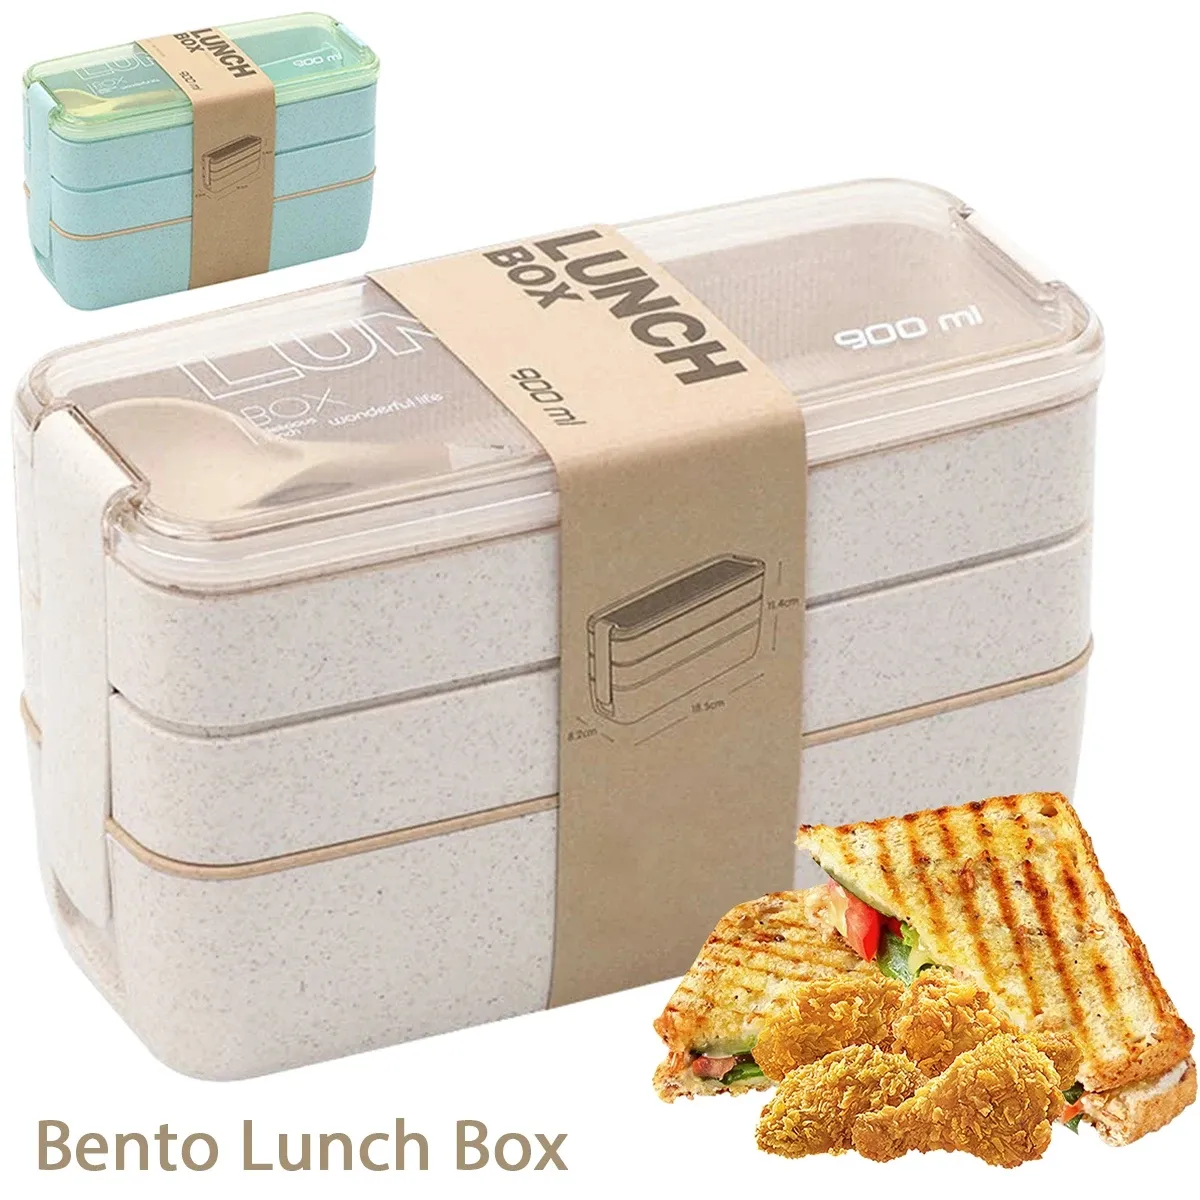 Wolesale Bento Box per Bambini da 900 ml 3 Lunch Box Impilabili Contenitore per Alimenti Portatile a Prova di Perdite Contenitore per Alimenti in Paglia di Grano Lavastoviglie